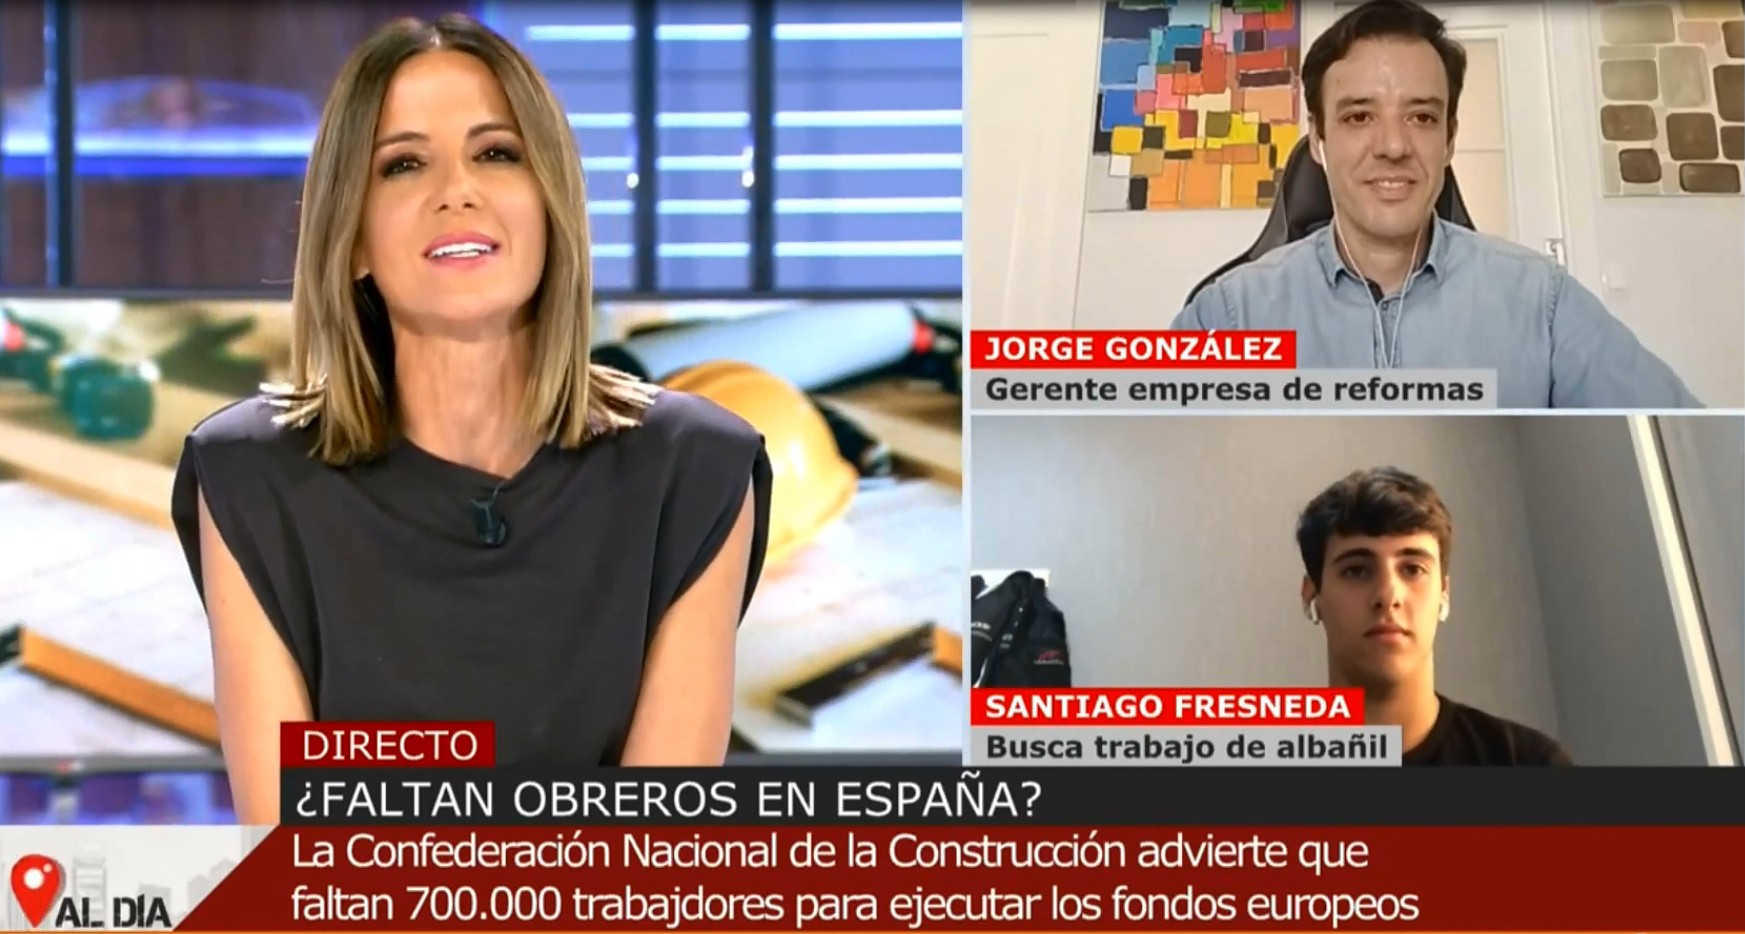 Entrevista en directo en Cuatro al día con la periodista Mónica Sanz